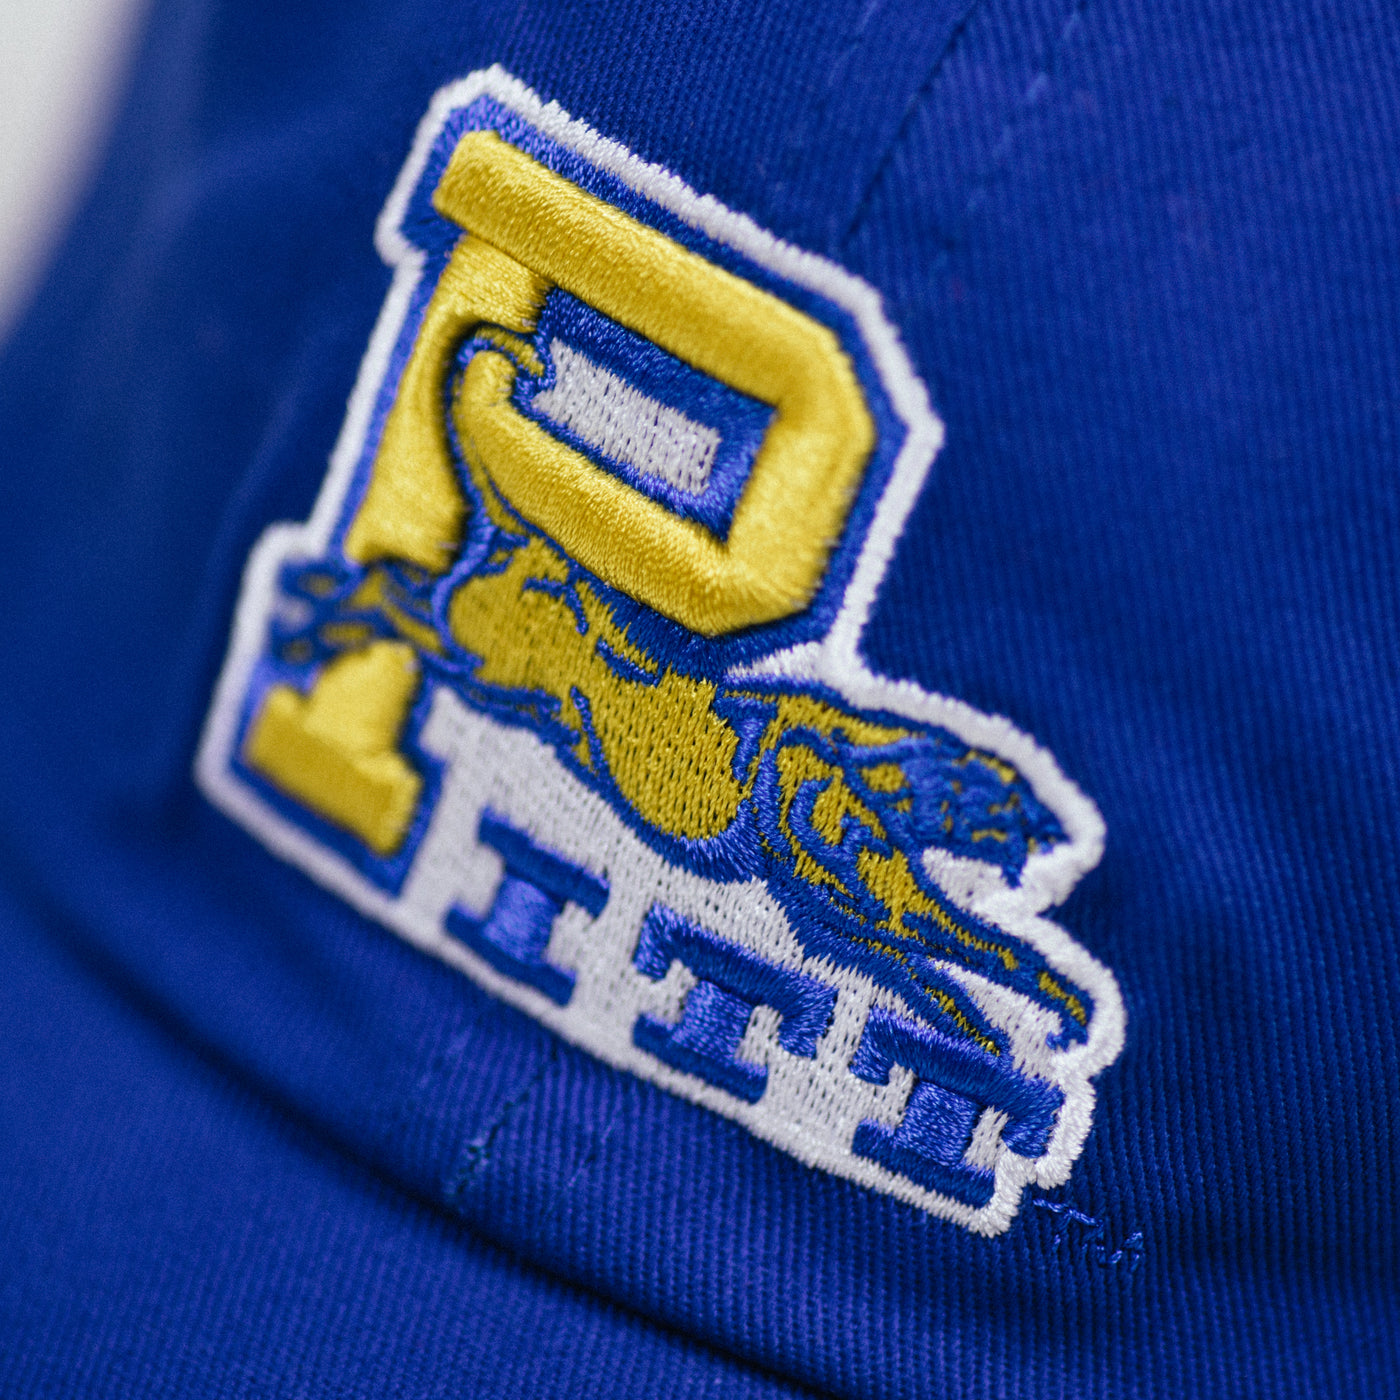 Pitt Panthers '80s Logo Dad Hat